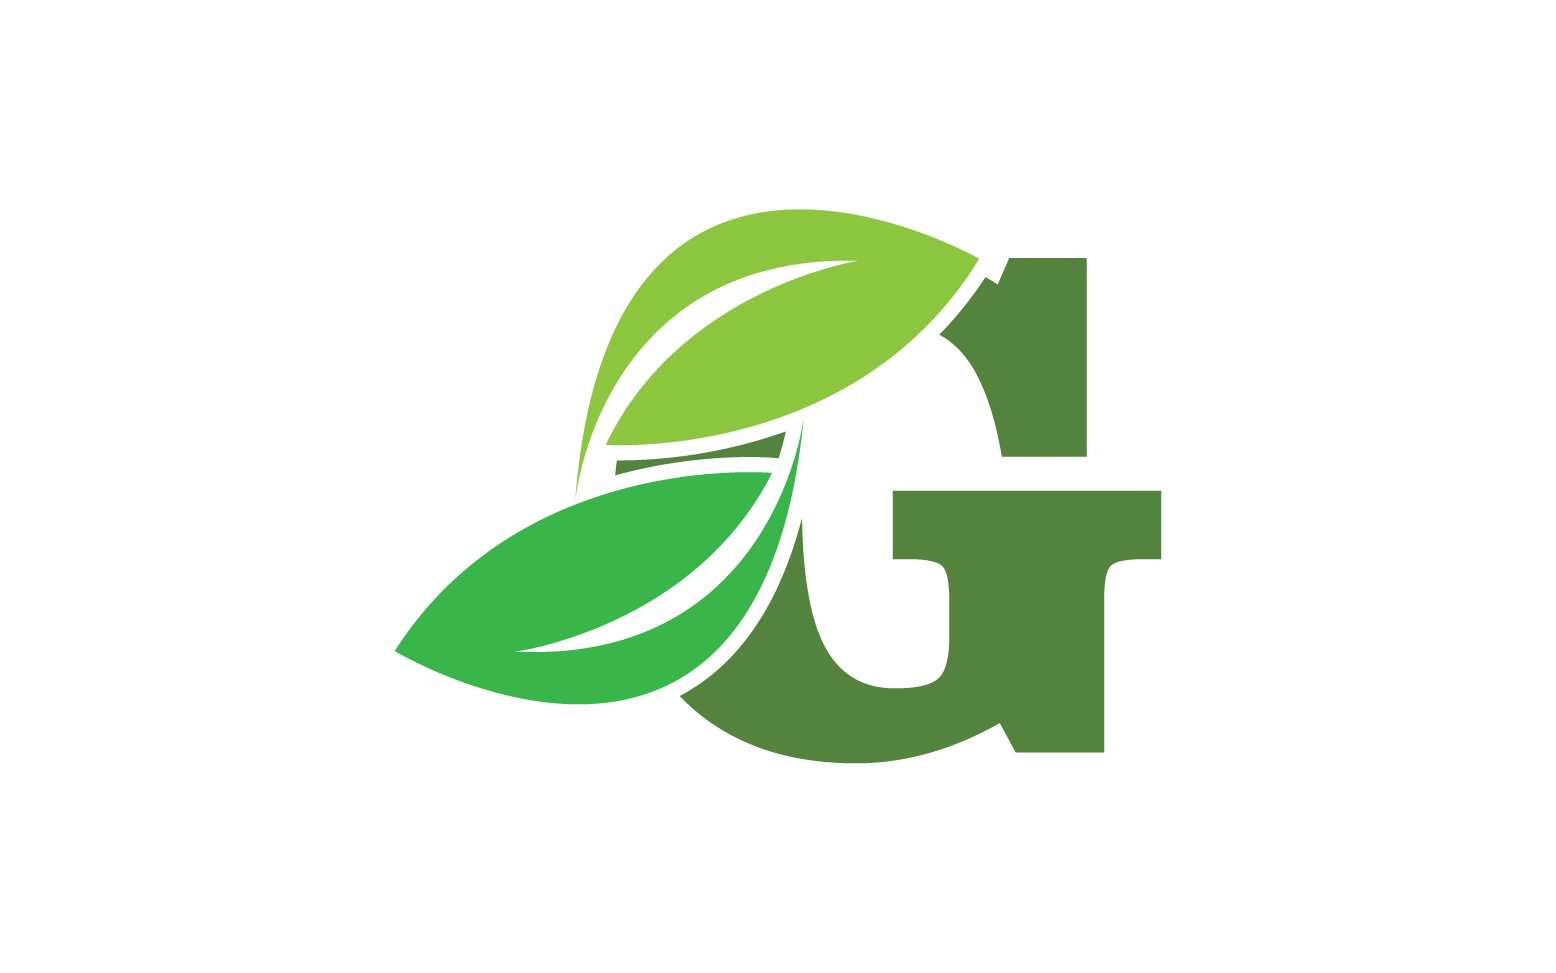 G letter leaf green logo icon version v47